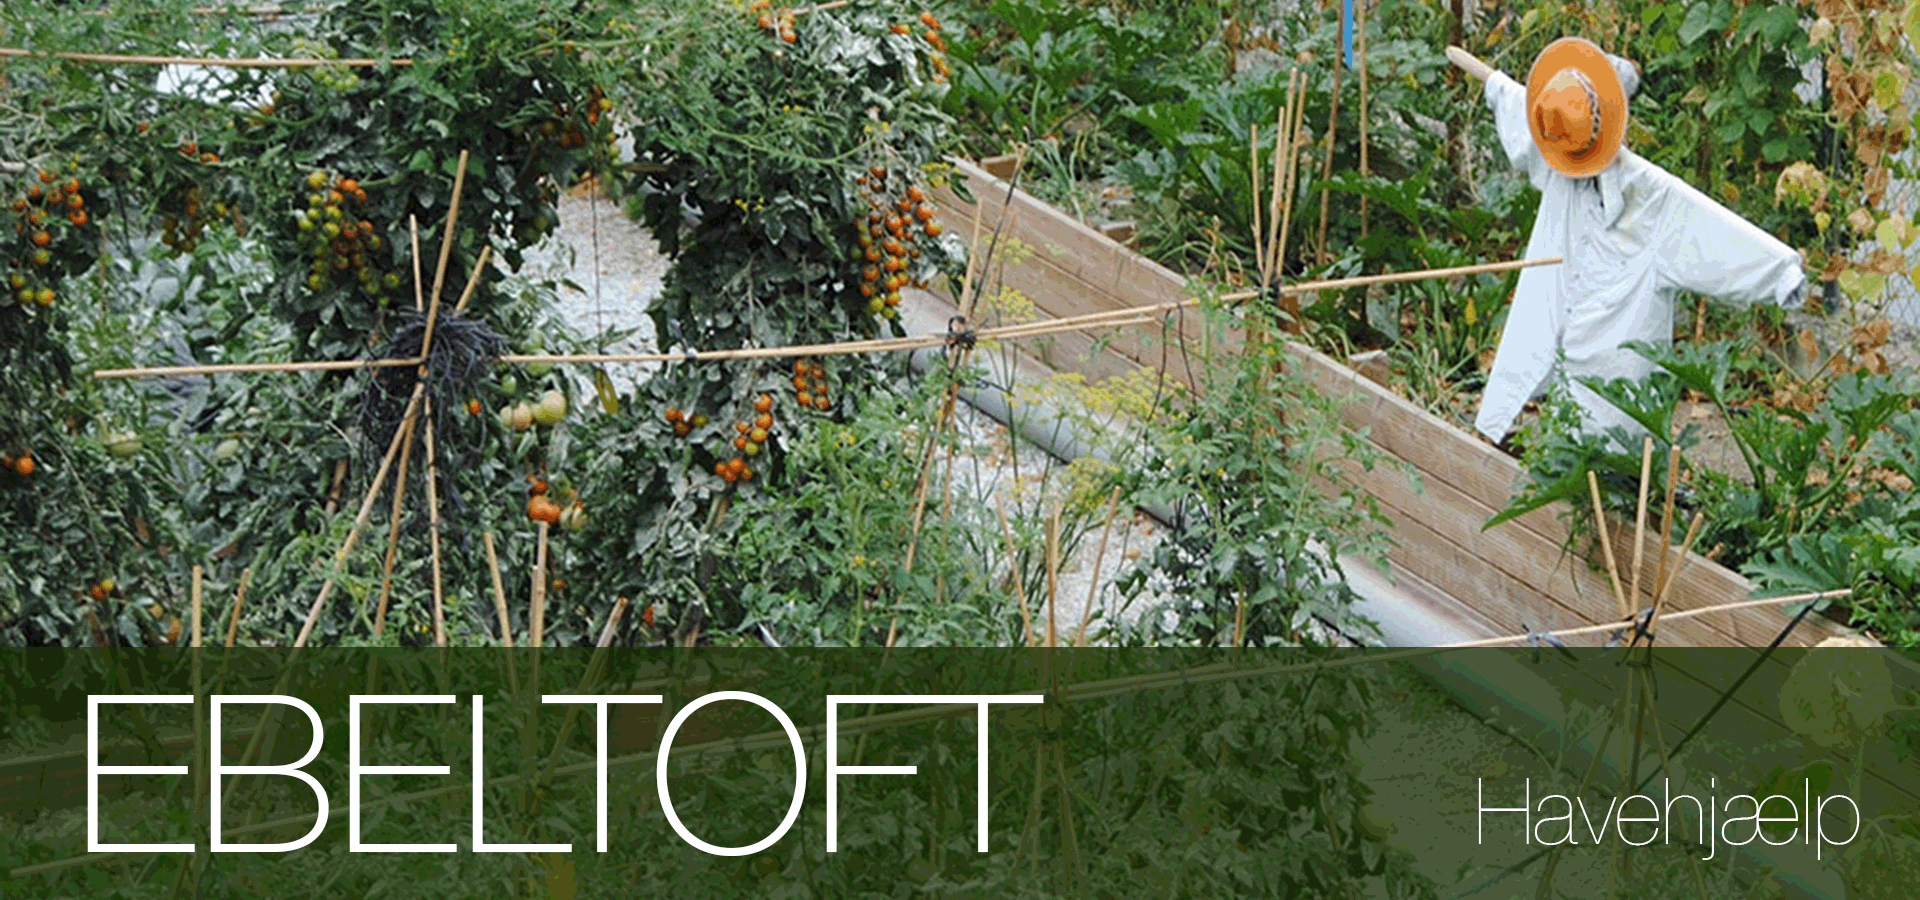 Havearbejde lokal havehjælp Ebeltoft